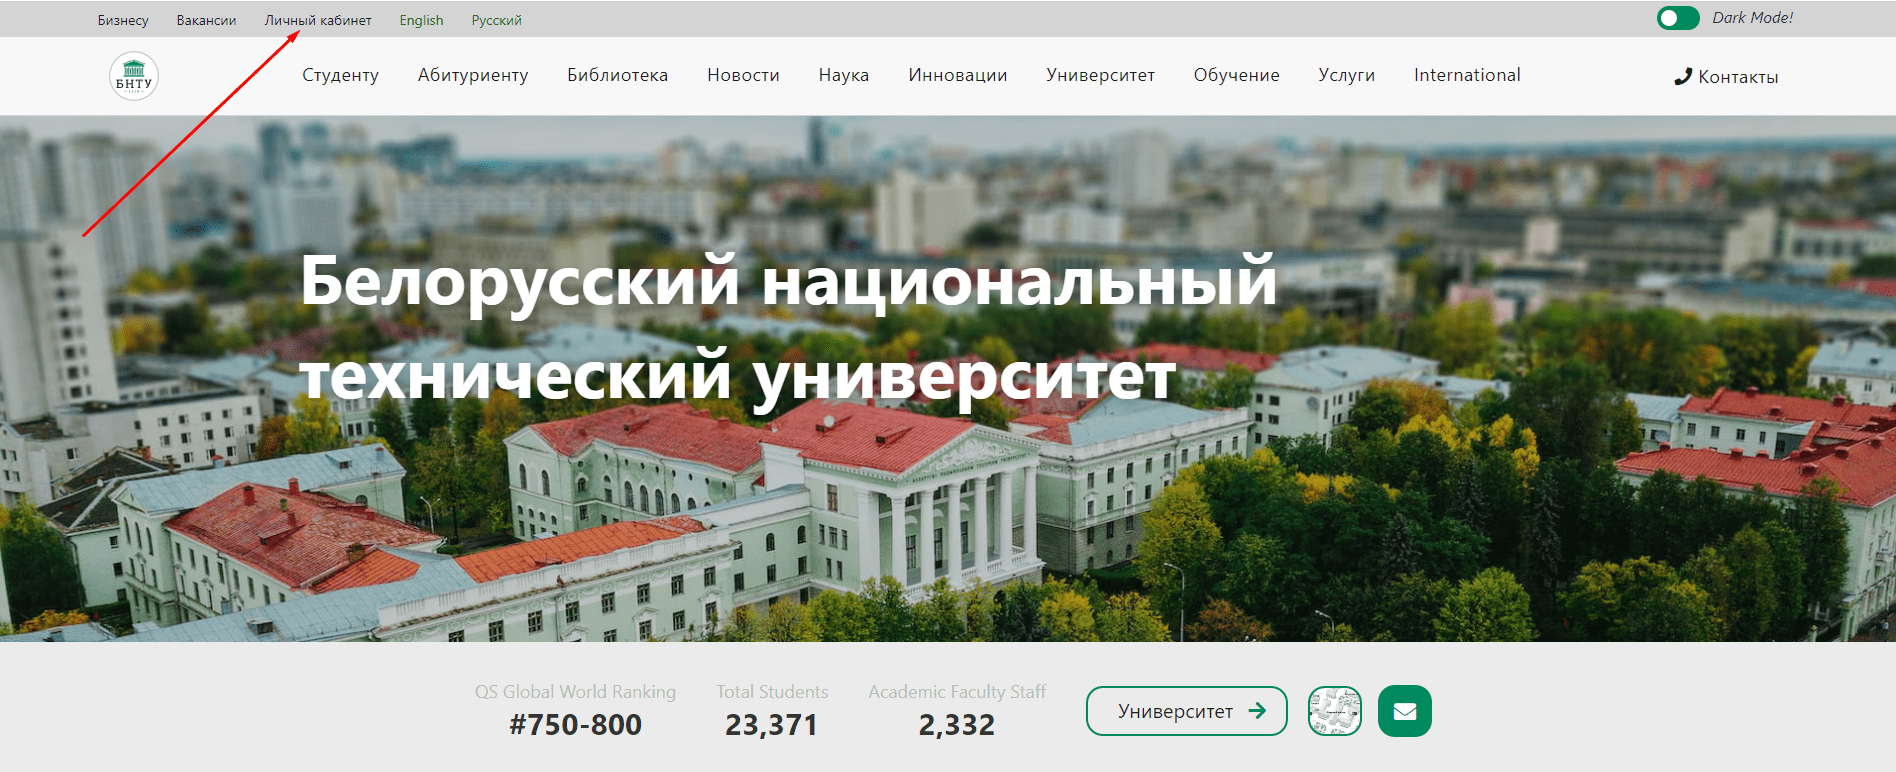 Белорусский национальный технический университет (bntu.by)